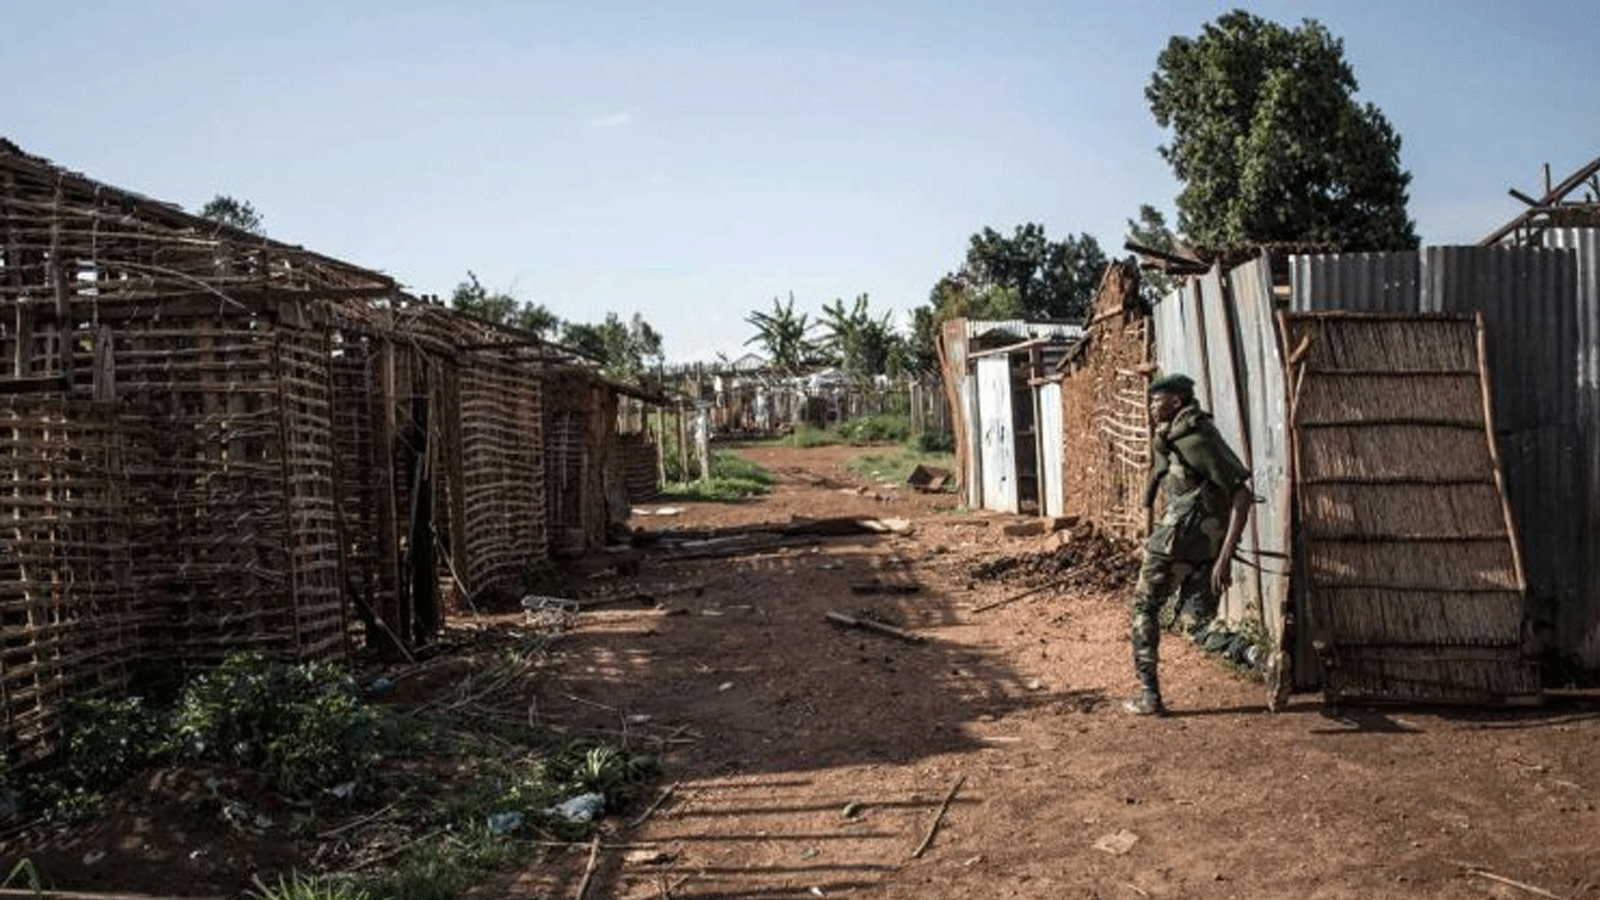 قرية مهجورة بعد تعرضها للهجوم ، في دجوغو بإقليم إيتوري الكونغولي